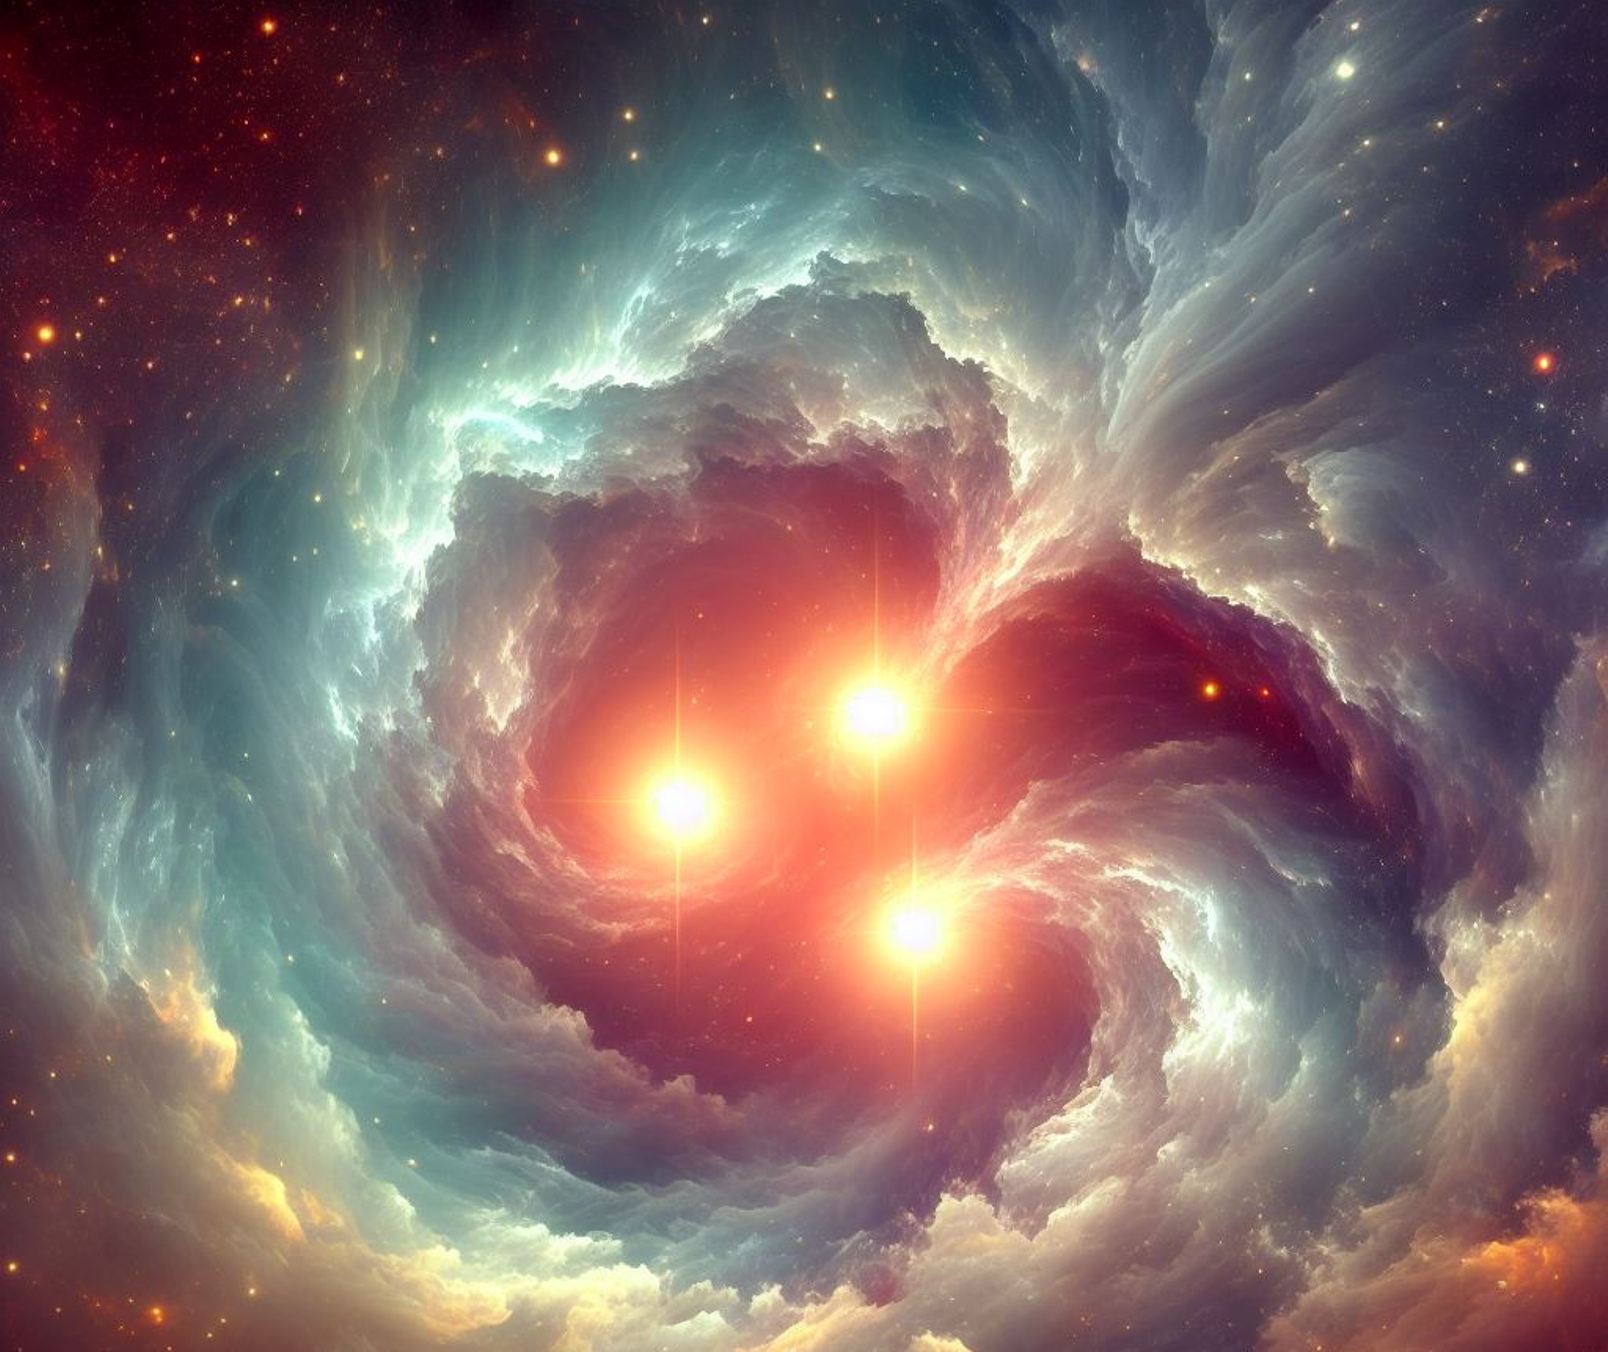 Une vue des étoiles mystérieuses par l'IA DALL-E. © 2023 Microsoft Corporation